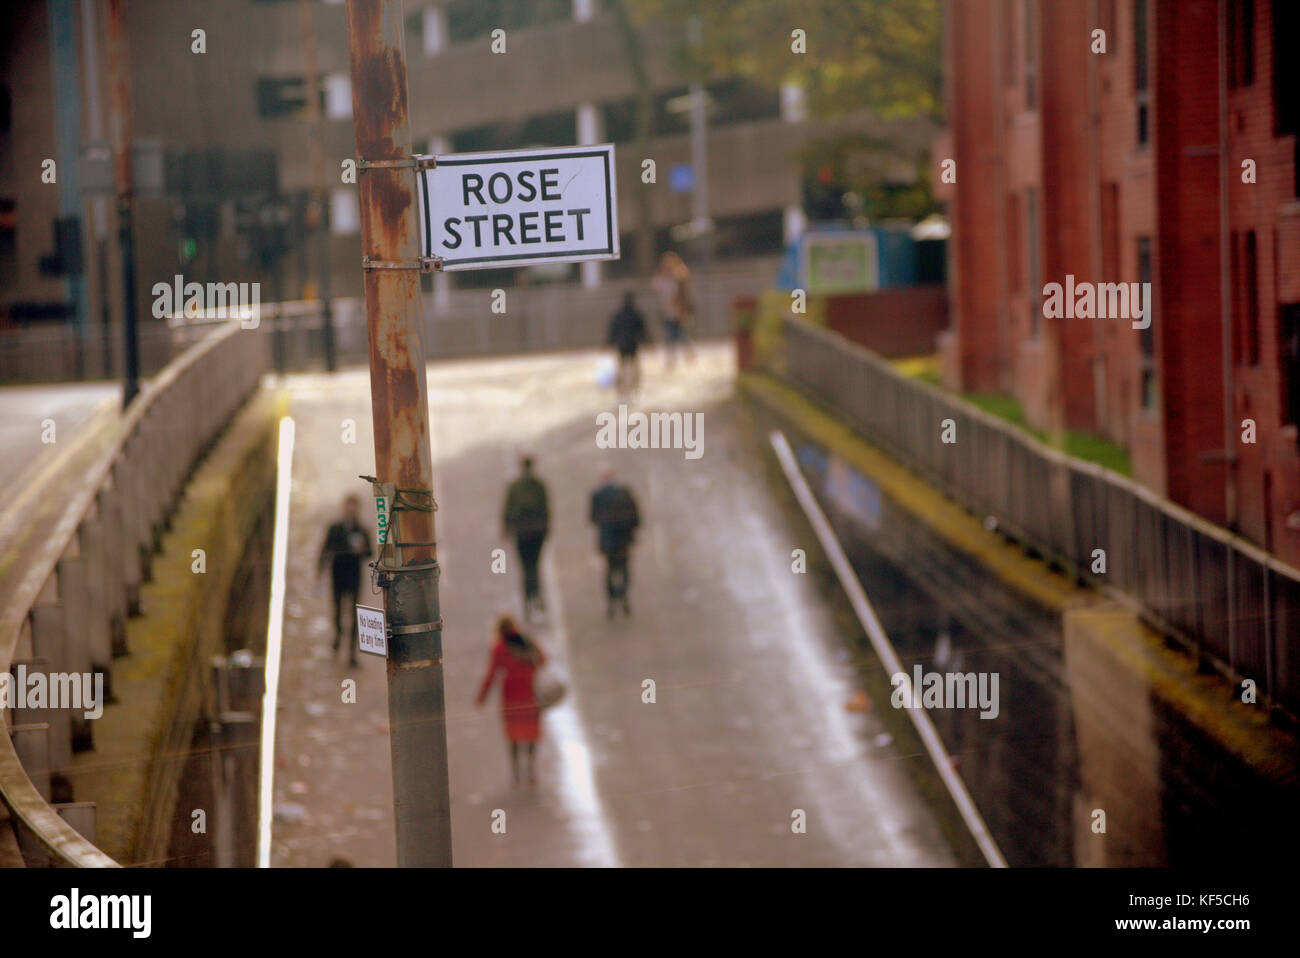 Rose Street glasgow firmar escena callejera de alto mirador fuera de foco las cifras de personas, hombres y mujeres Foto de stock